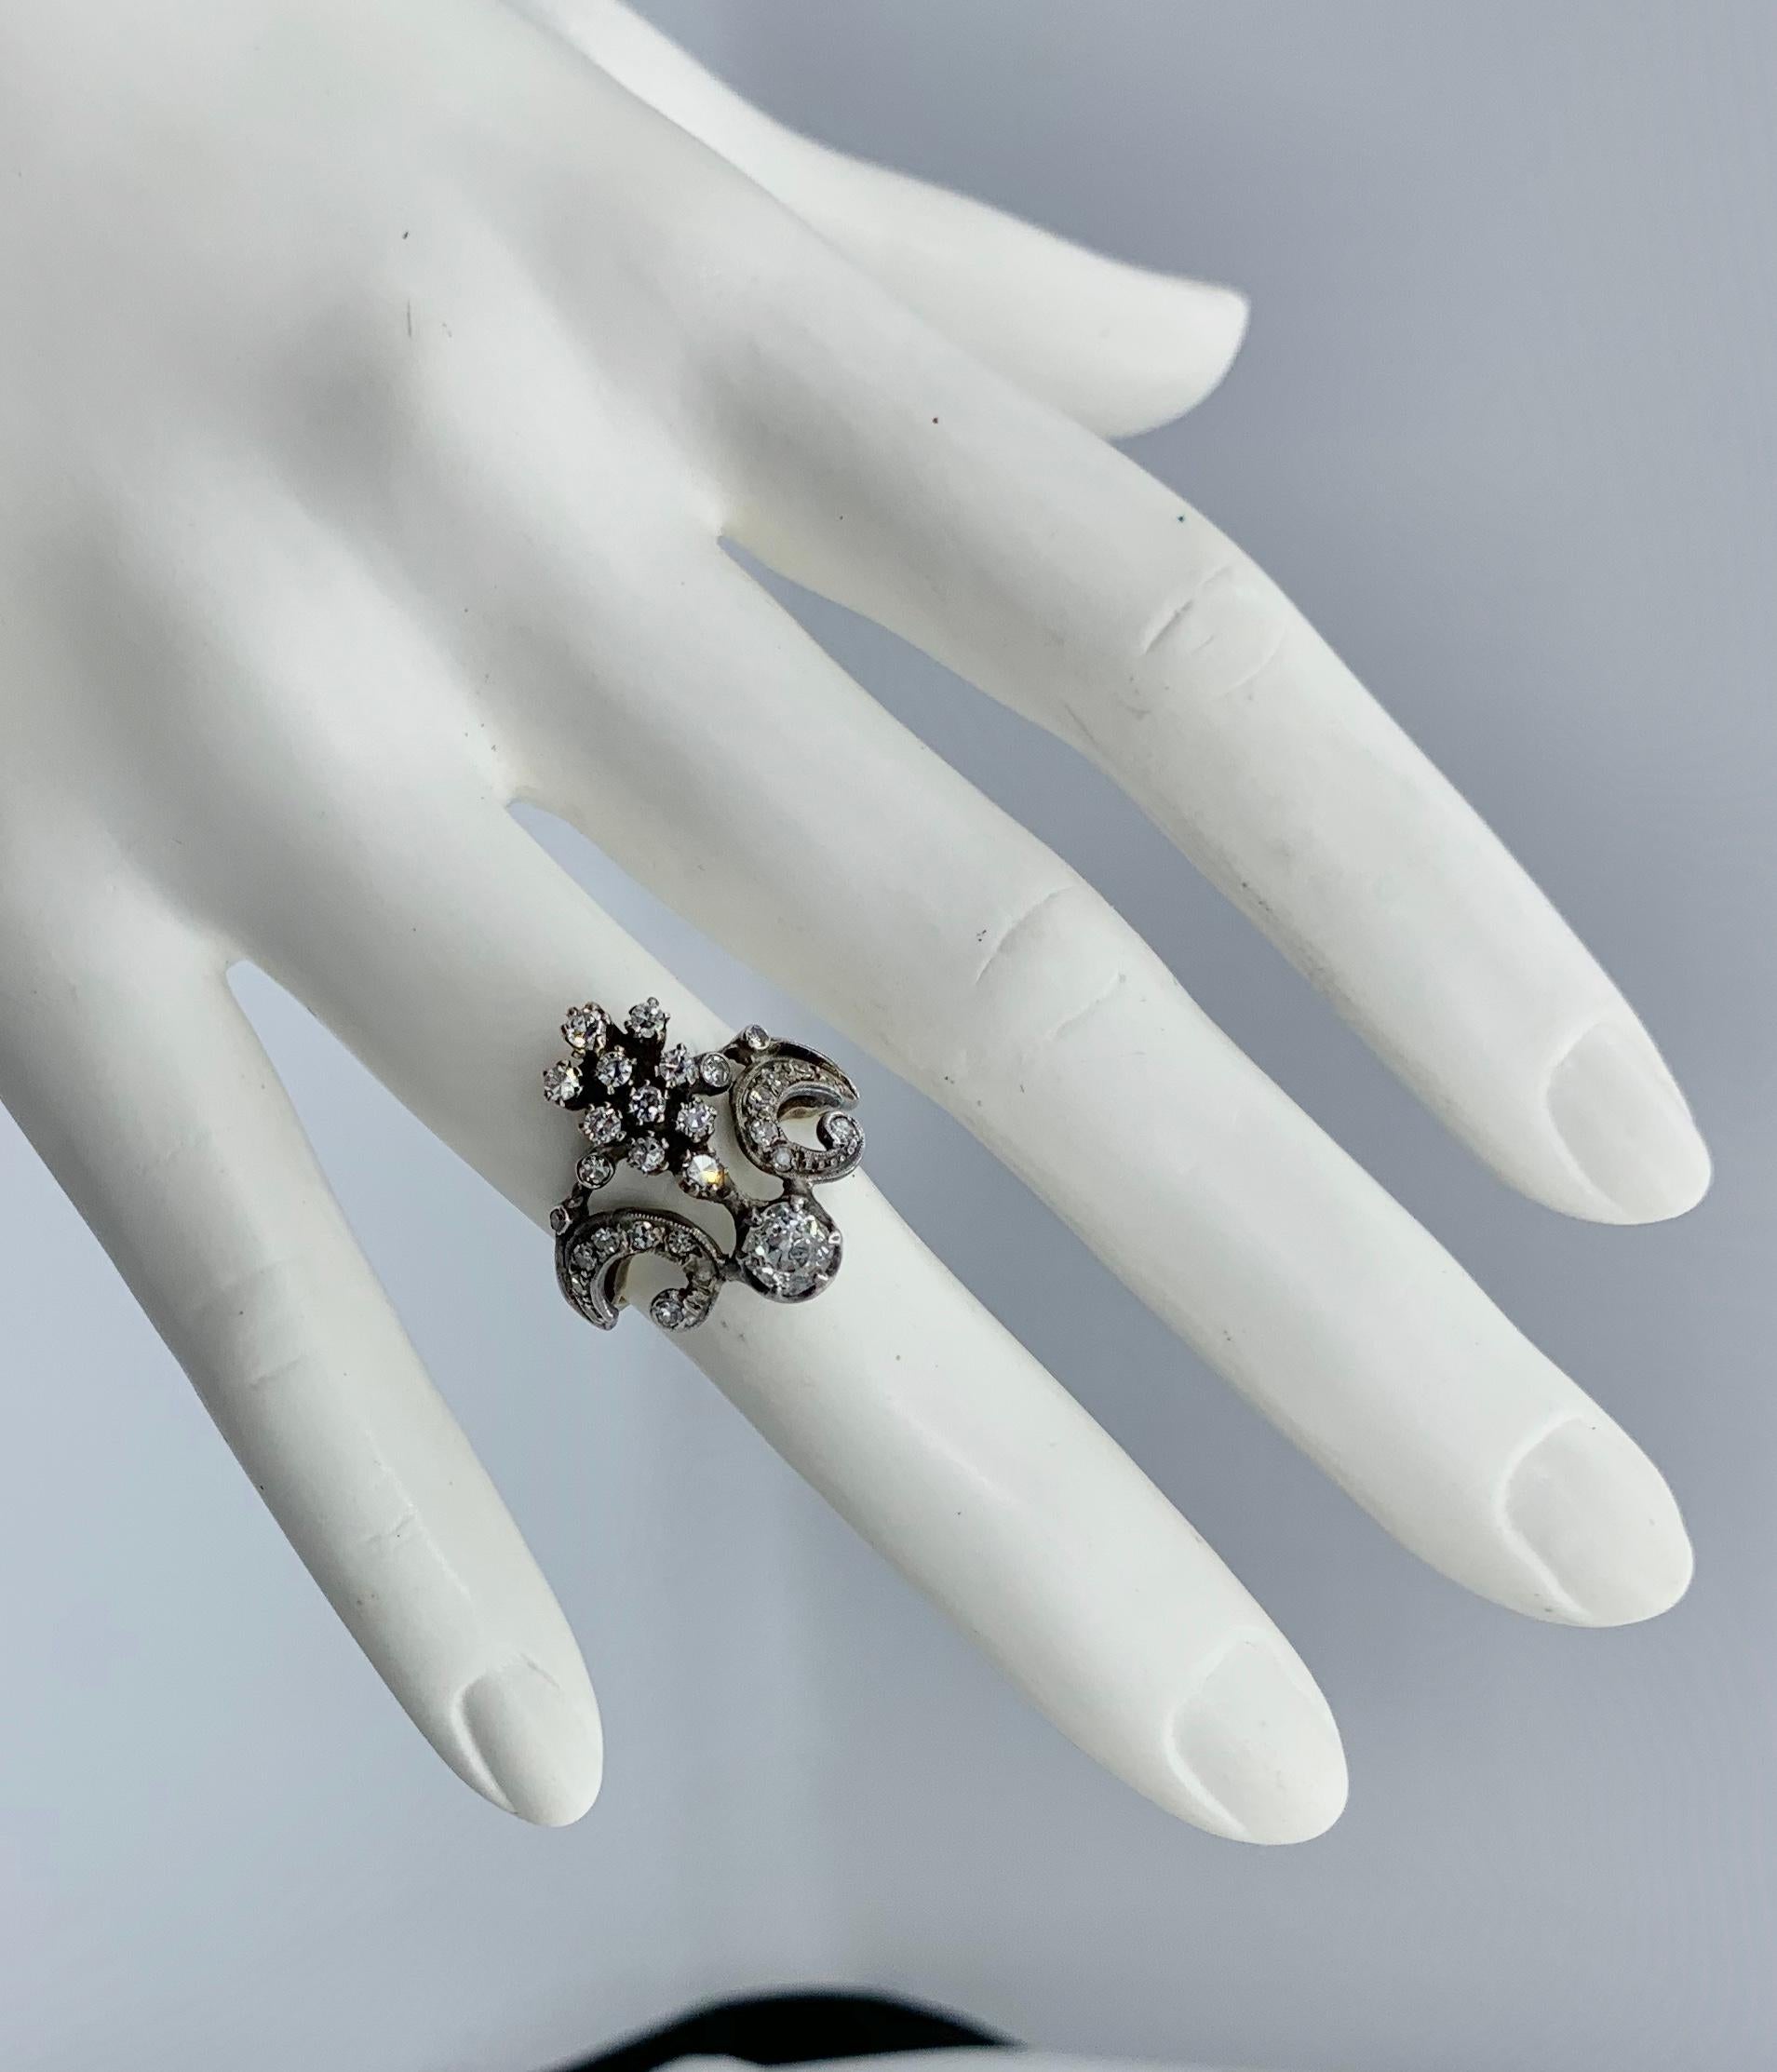 Dies ist eine außergewöhnliche antike Belle Epoque Old Mine Cut Diamond Ring in einem atemberaubenden und sehr selten Krone oder Tiara Motiv von großer Schönheit.   Die Diamanten im alten Minenschliff sind in Silber auf 18 Karat Gold gefasst, wie es